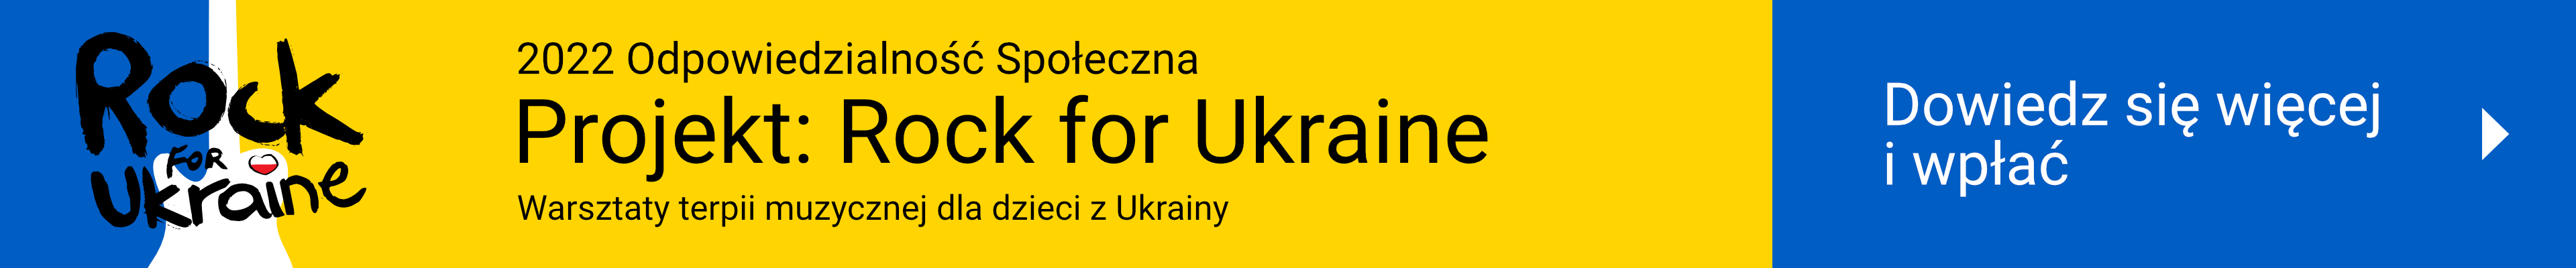 Rock for Ukraine - Polska